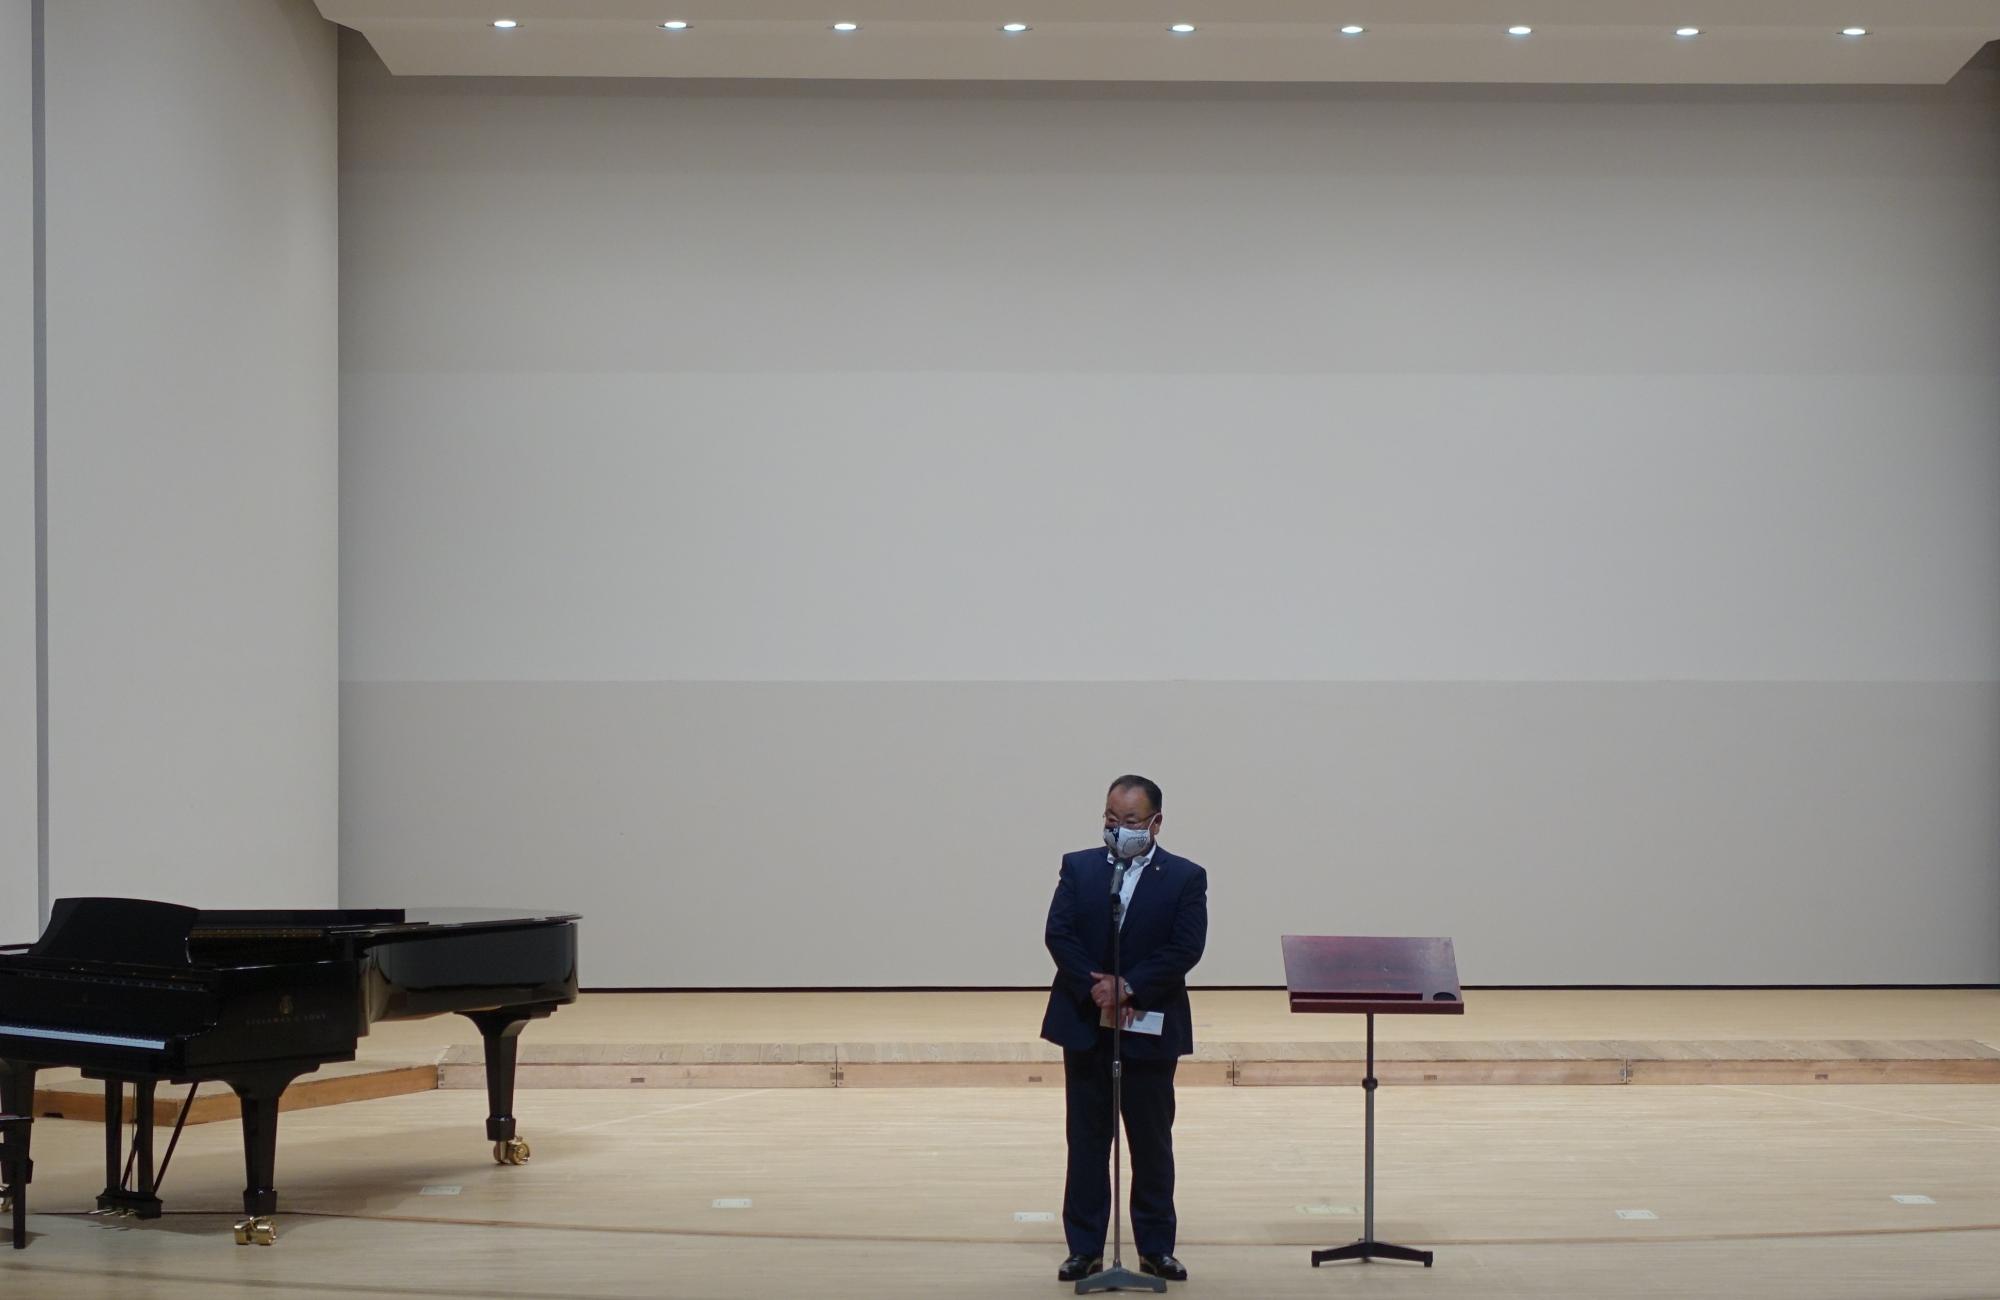 第45回さくら合唱のつどいで、グランドピアノが置かれた舞台の上で、マイクの前に立つ市長の写真